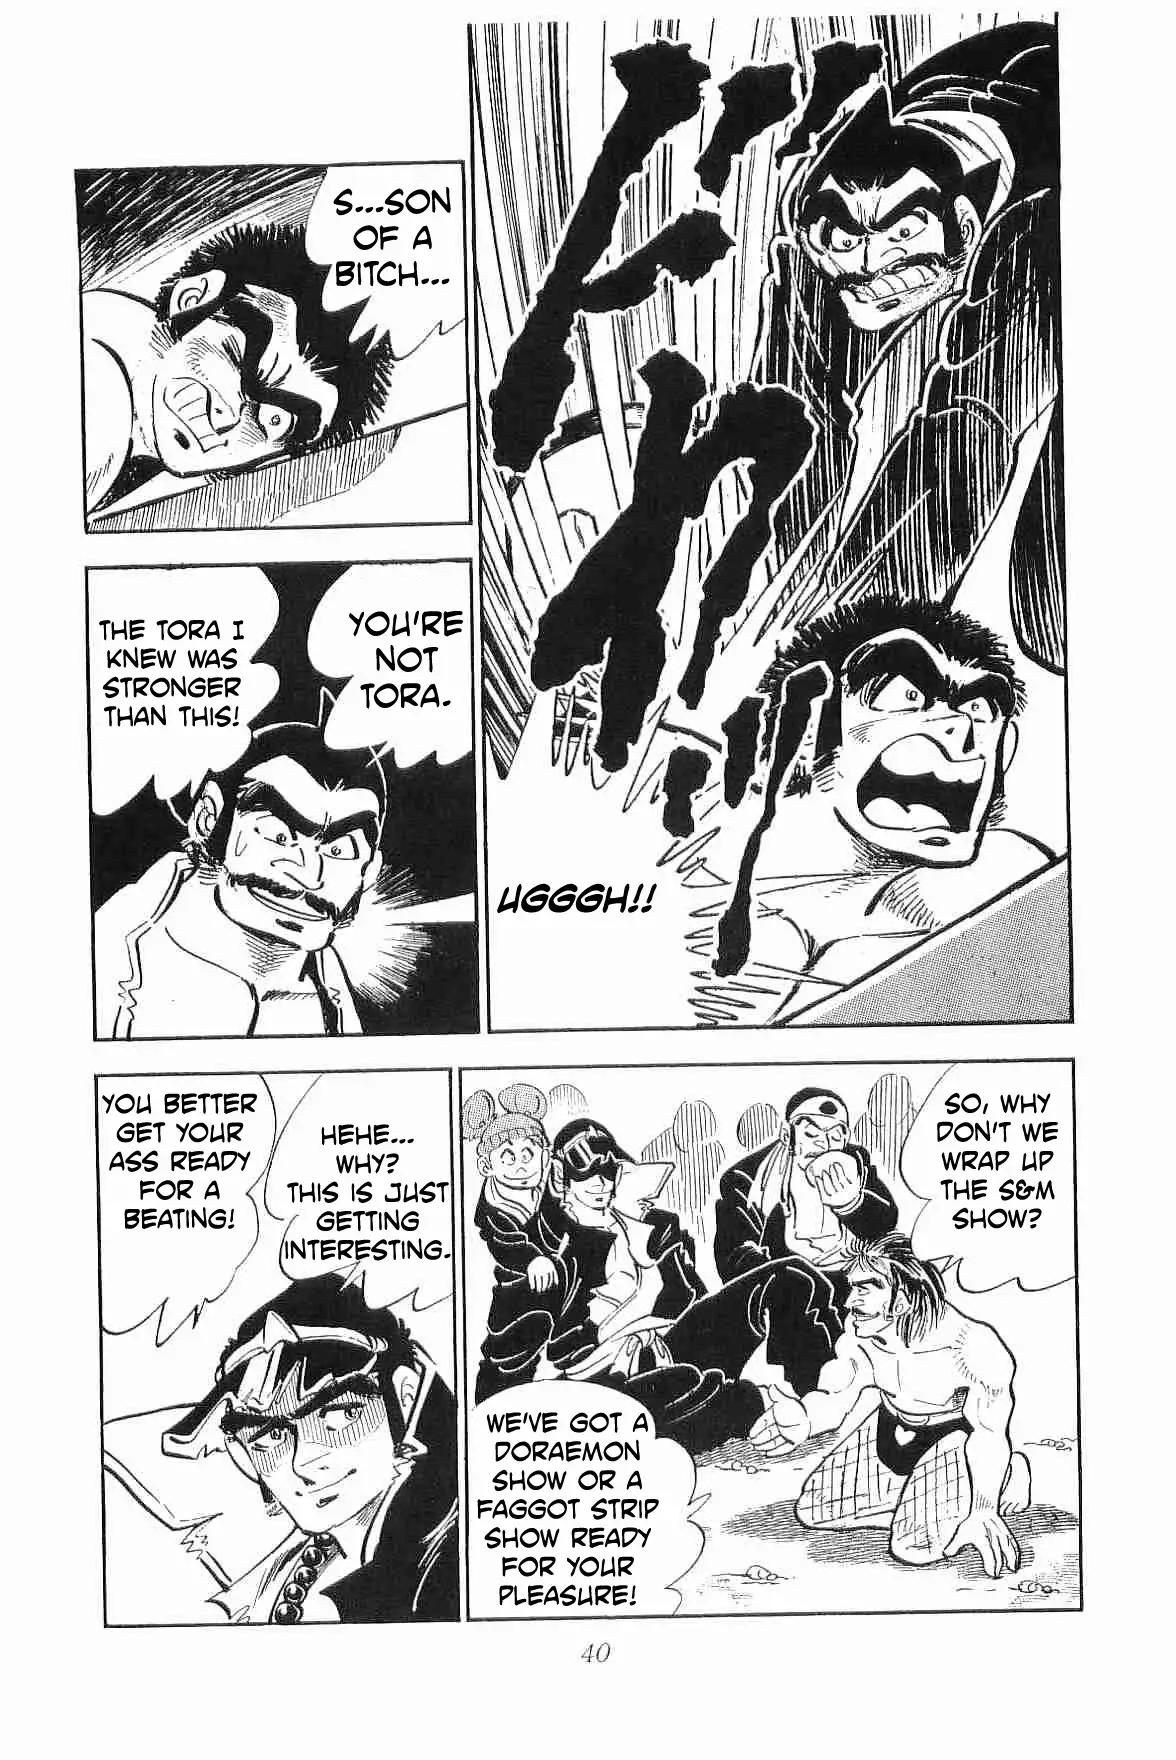 Rage!! The Gokutora Family - 8 page 40